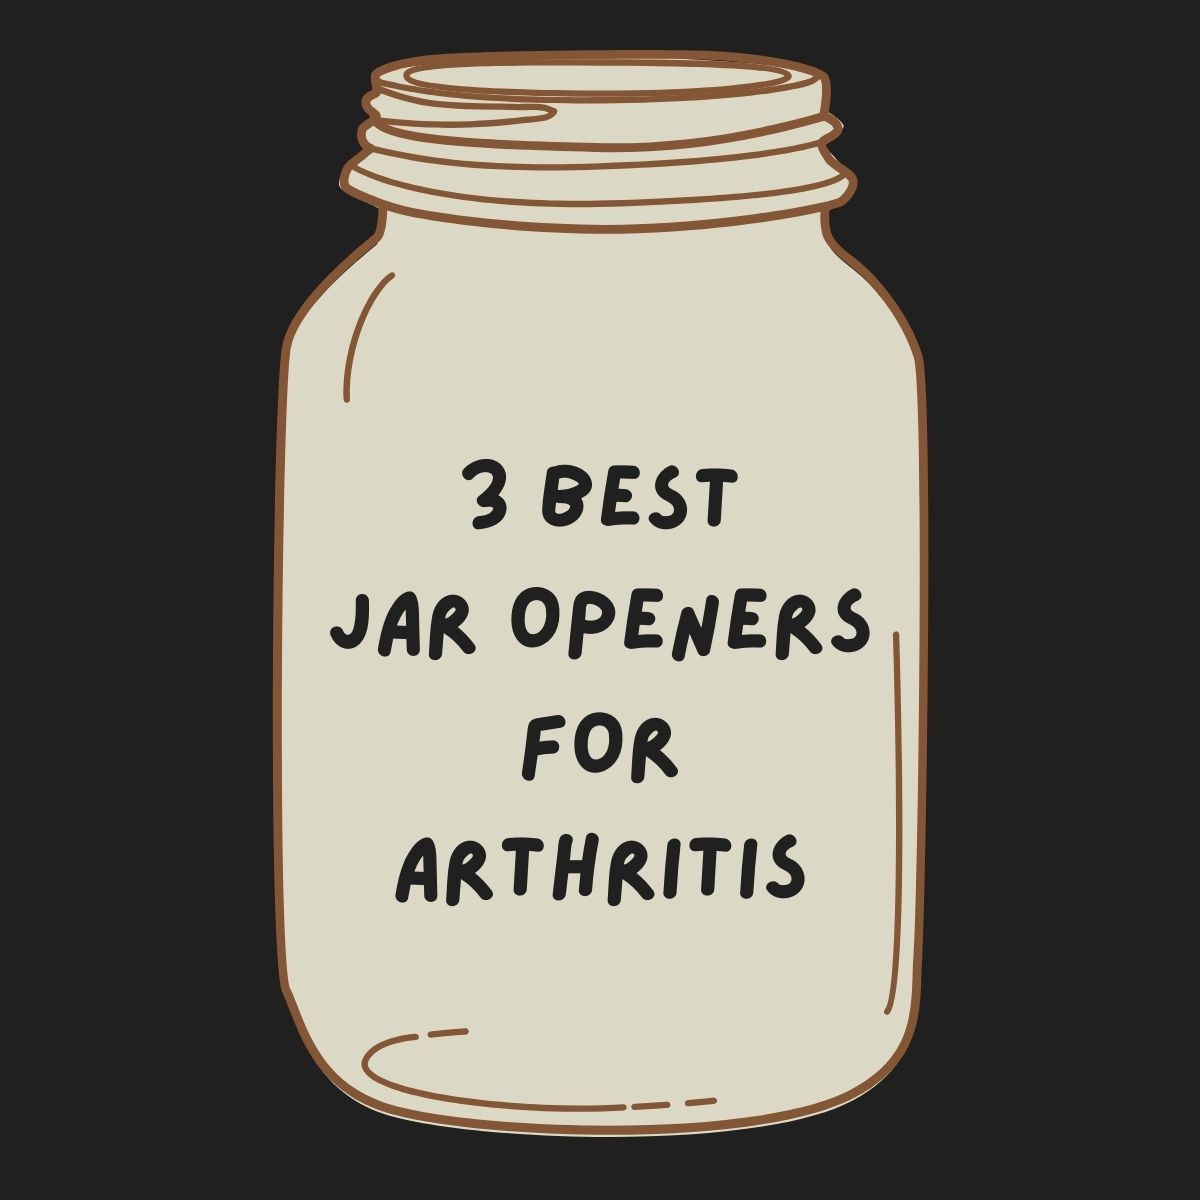 https://jarandcanopeners.com/wp-content/uploads/2022/01/jar-openers-for-arthritis.jpg